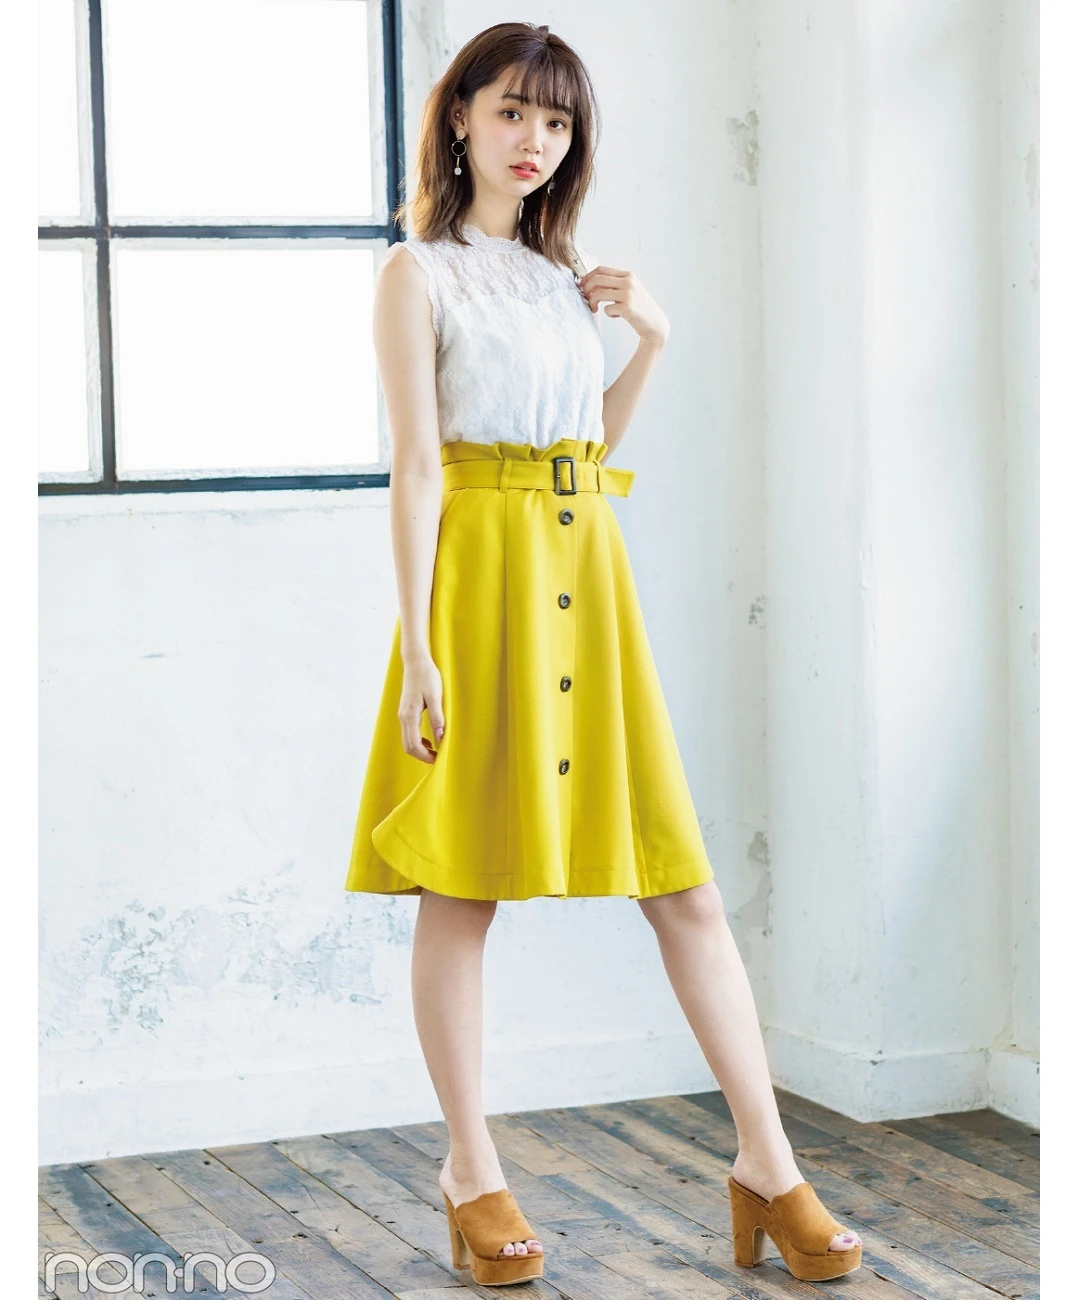 【夏のノースリーブコーデ】江野沢愛美は、前ボタンスカートで脚長コーデ